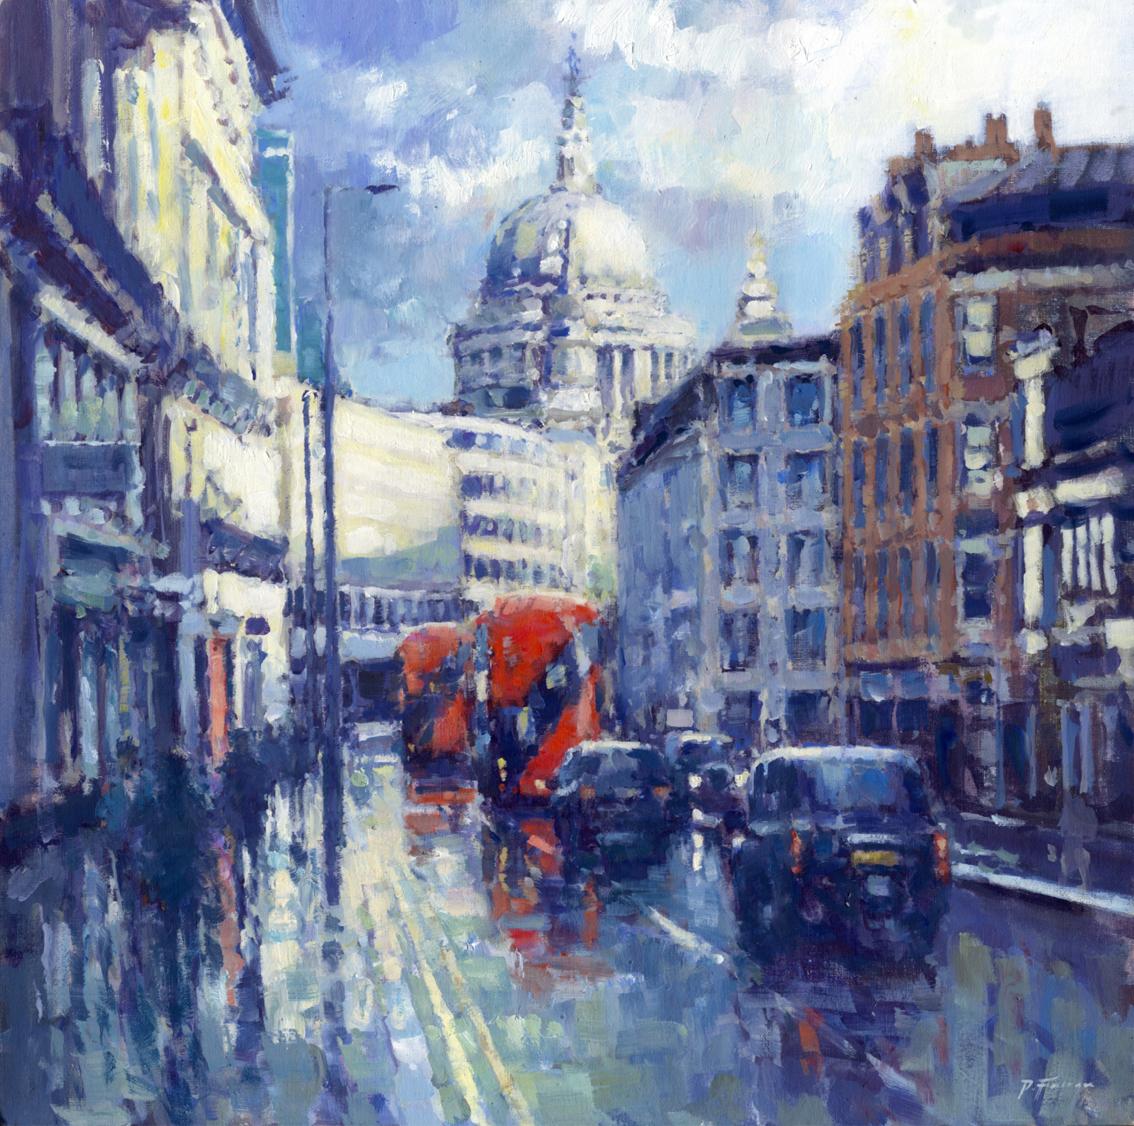 Après-midi Shower, Fleet Street - impressionnisme original - peinture de paysage urbain londonien